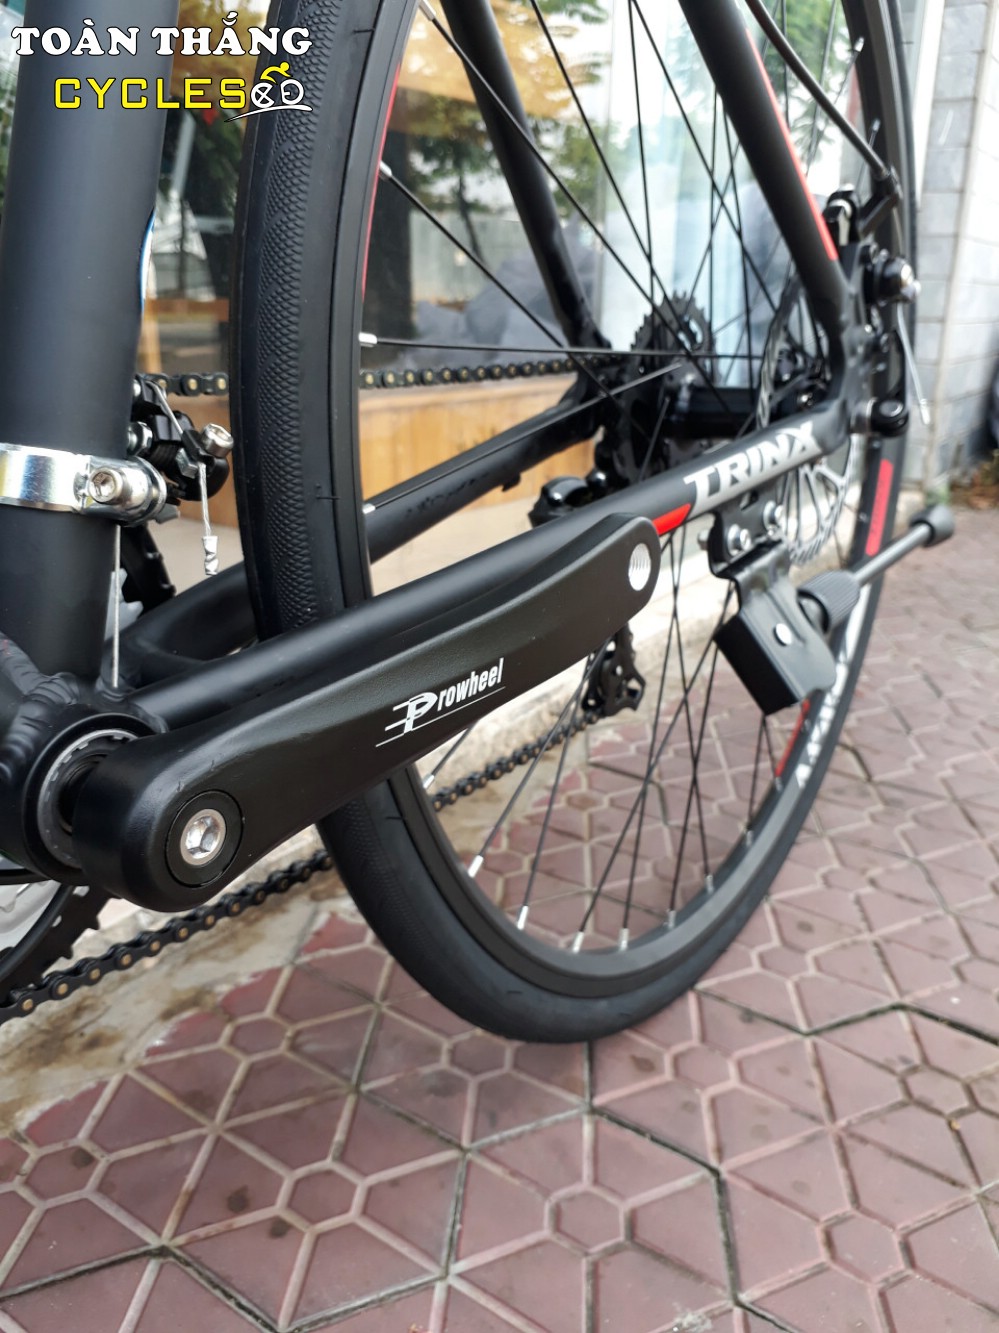 Xe đạp thể thao TRINX FREE 2.0 2018 Black Grey Red